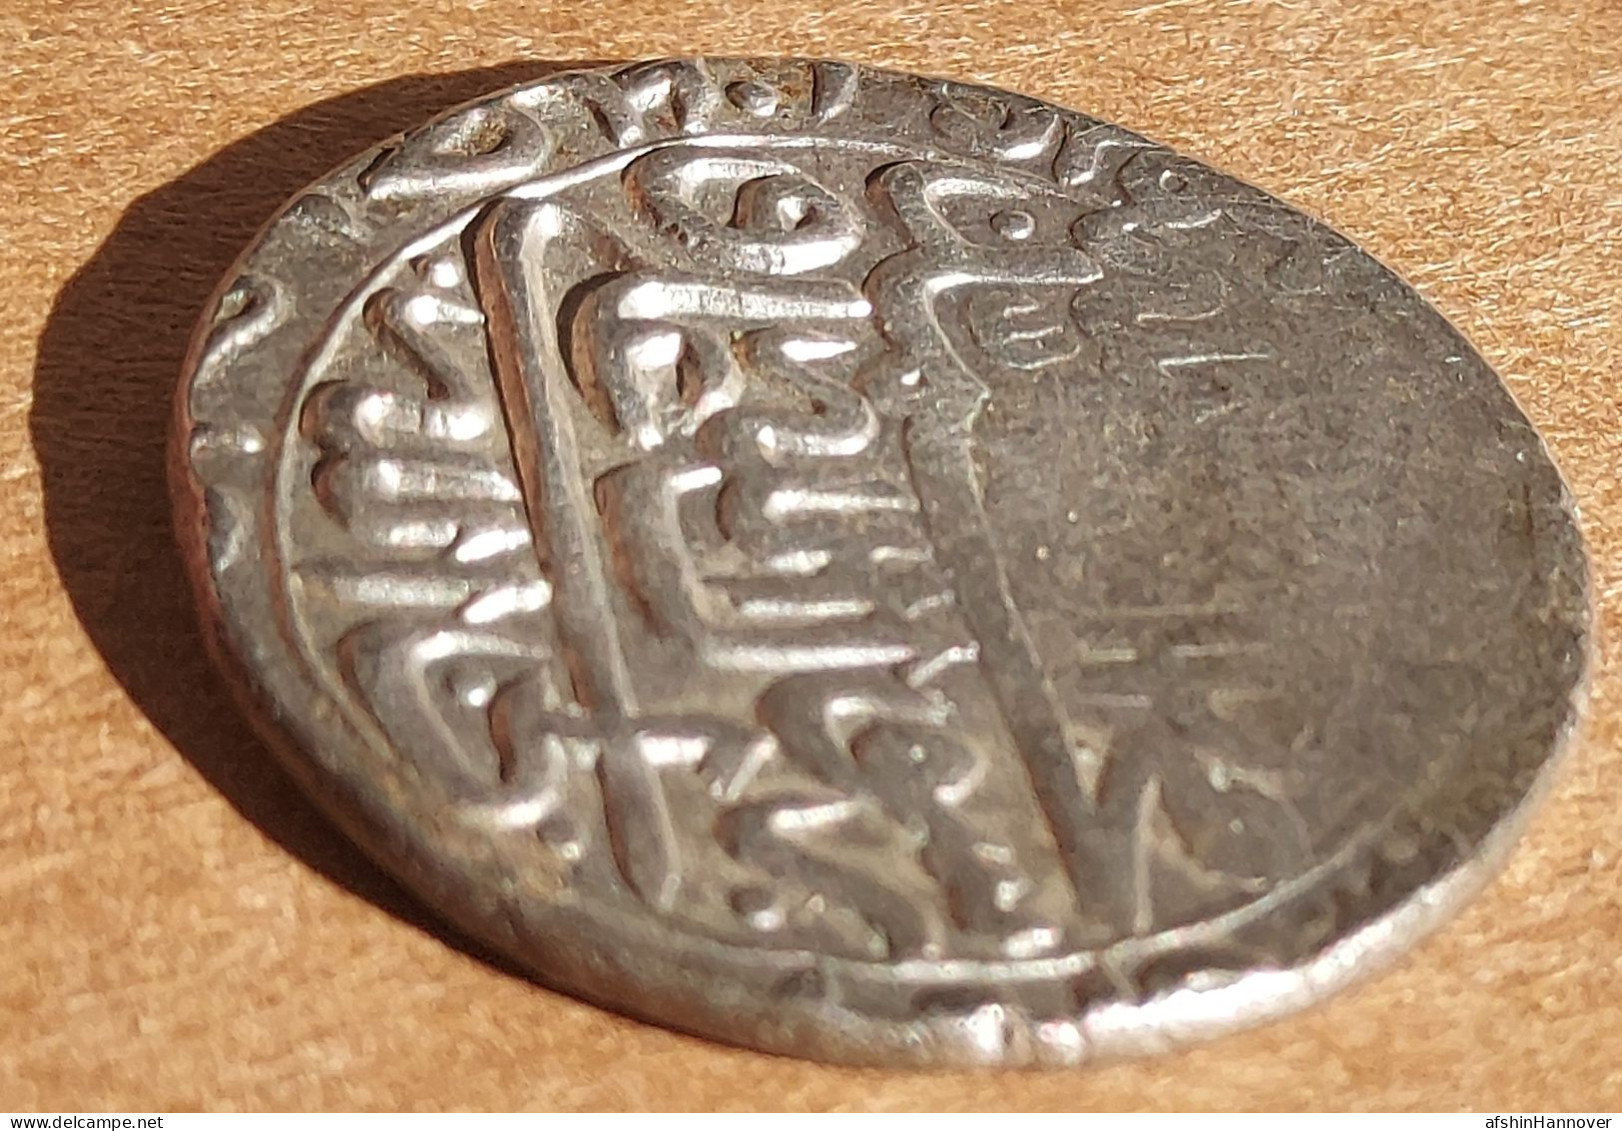 سکه پنج شاهی ، شاه عباس دوم صفوی SAFAVID: Shah ABBAS II, Silver 5 Shahi Tabriz - Iran